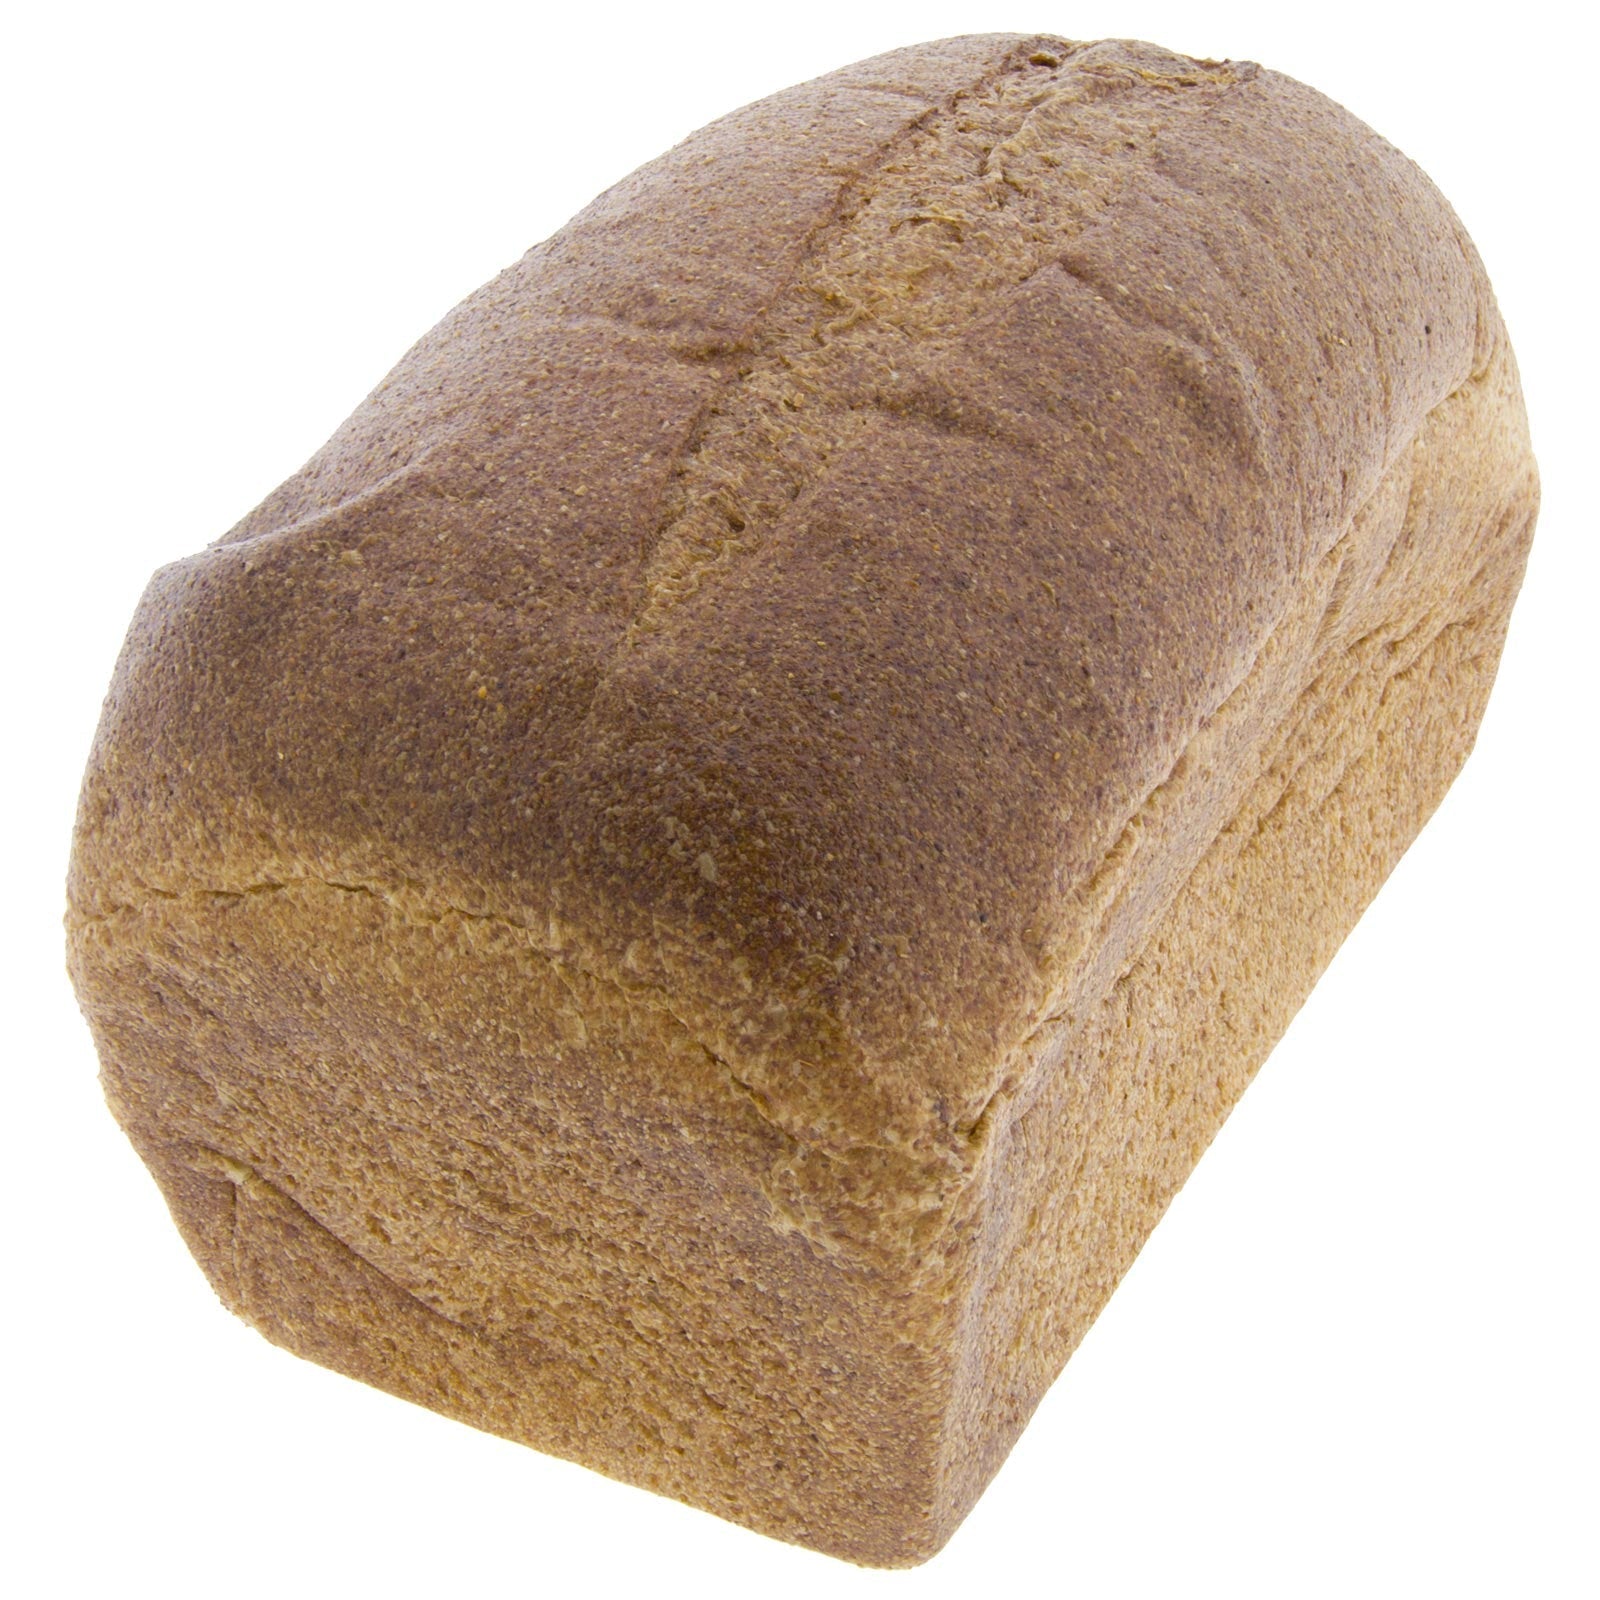 Pan de Molde de Centeno Integral SIN SAL Ecológico 400g (sin cortar)